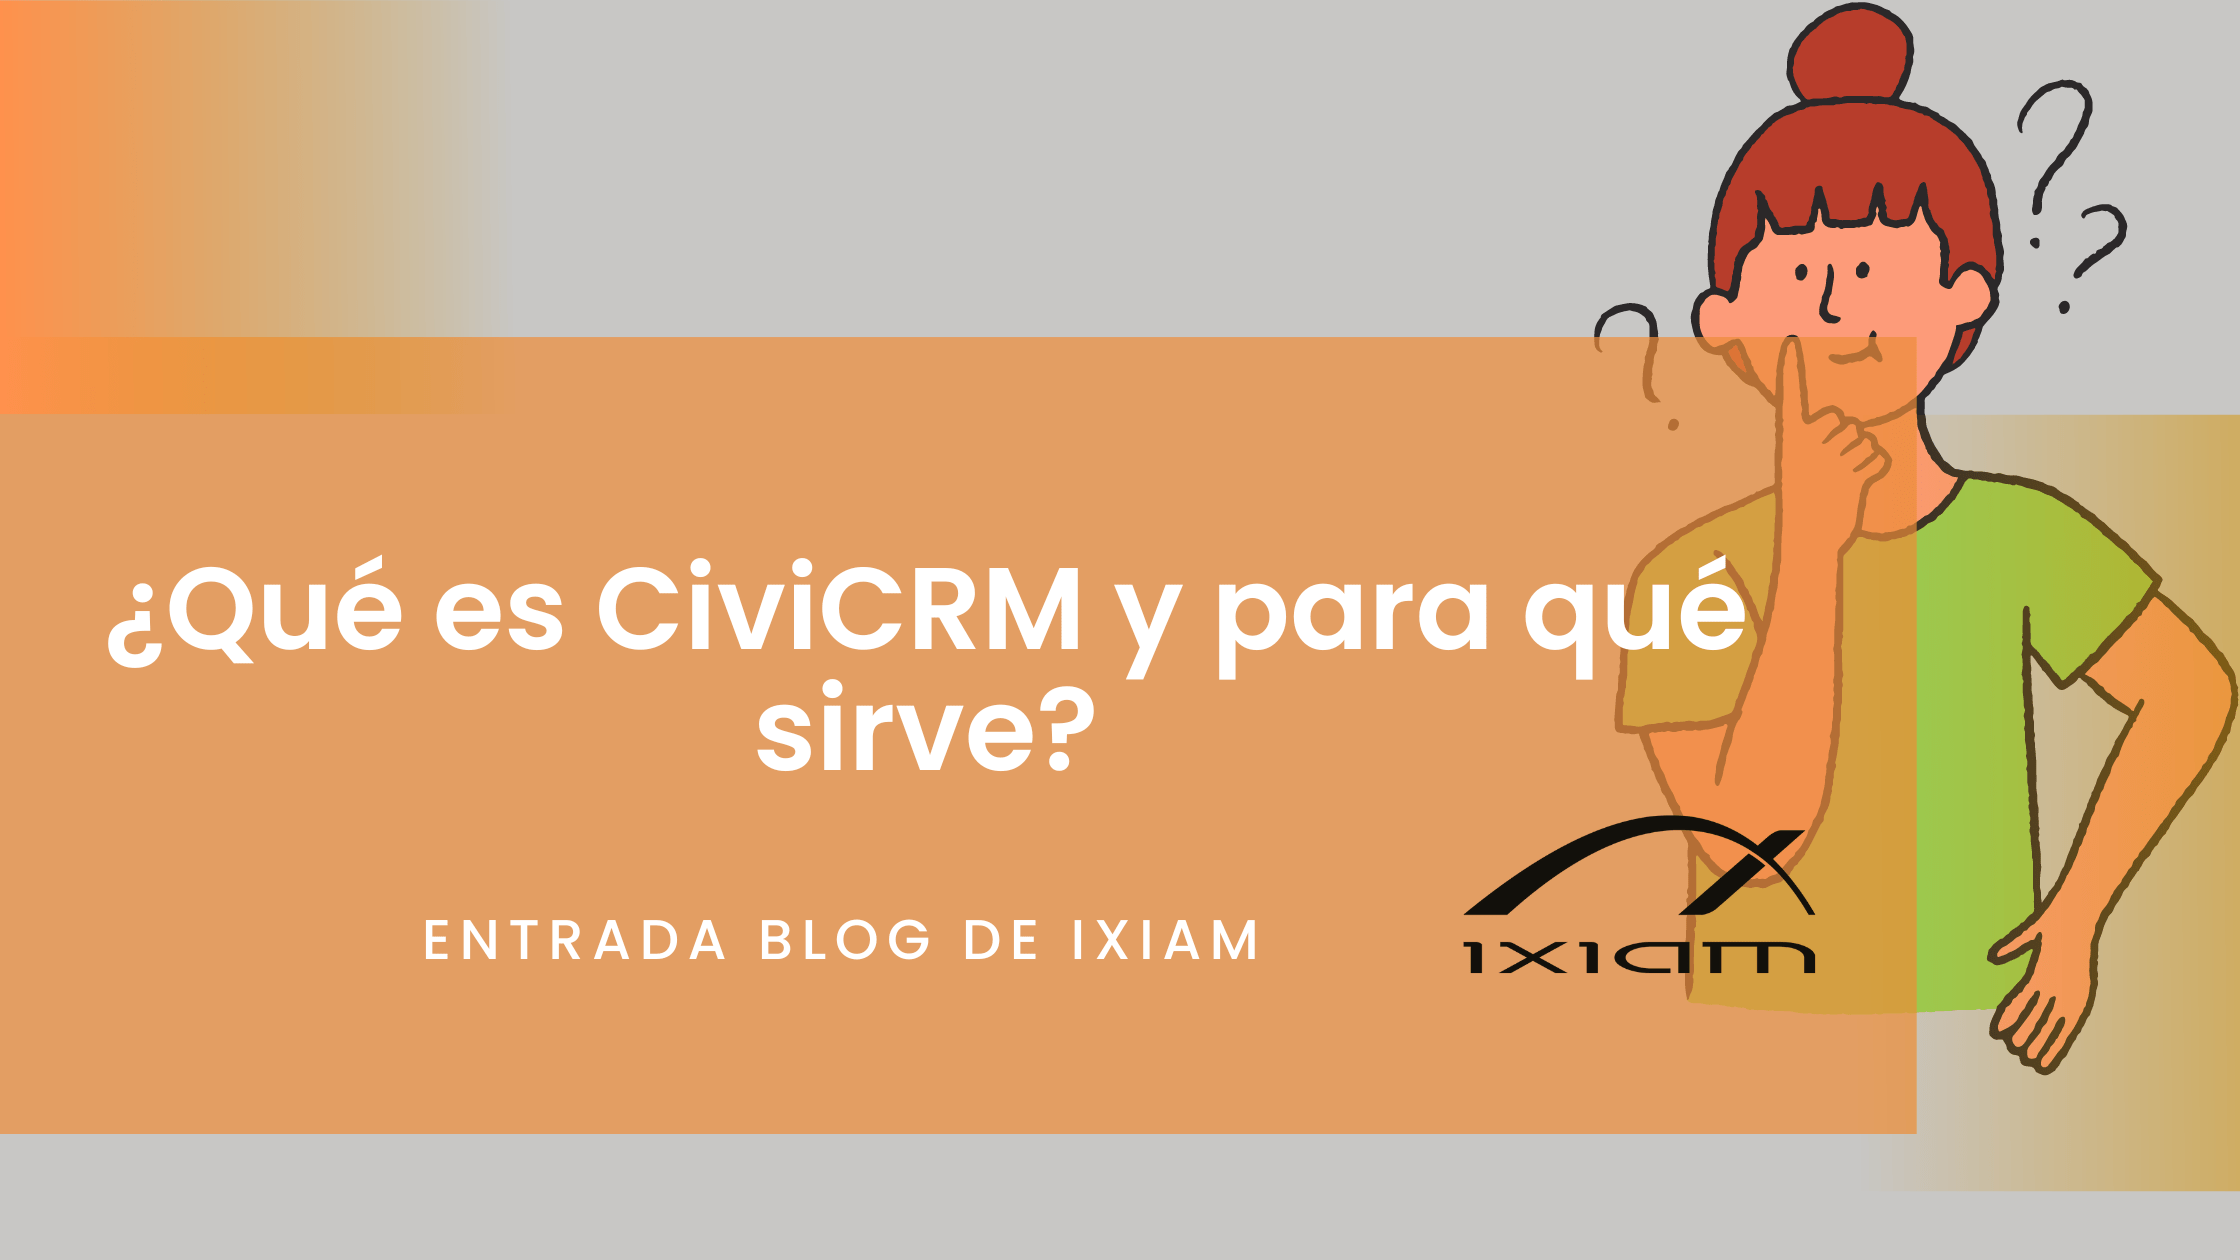 Civicrm qué es y para qué sirve | ixiam blog